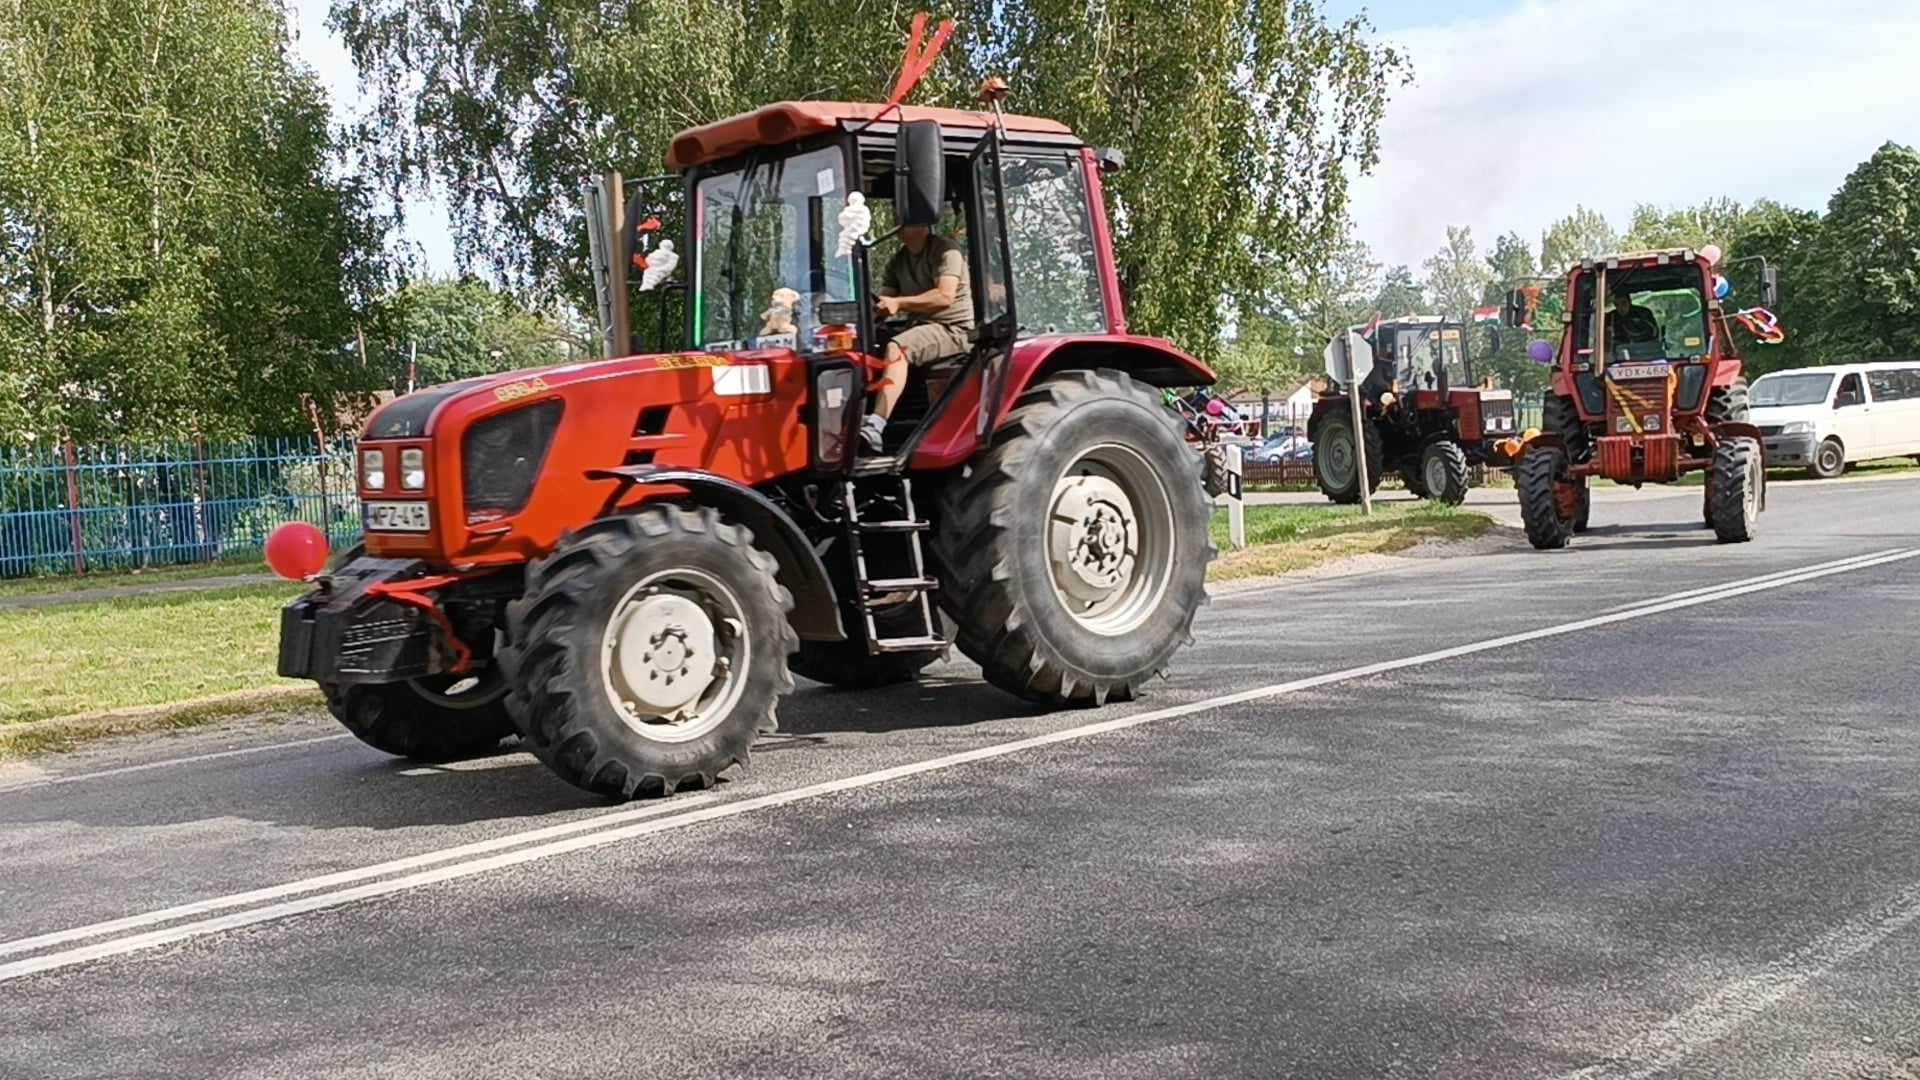 Egy piros traktor sofőrrel halad egy aszfaltozott úton felvonulás vagy esemény közben. Egy másik hasonló traktor következik mögötte. Az út széléről néznek emberek, a háttérben fák és kerítés látható.